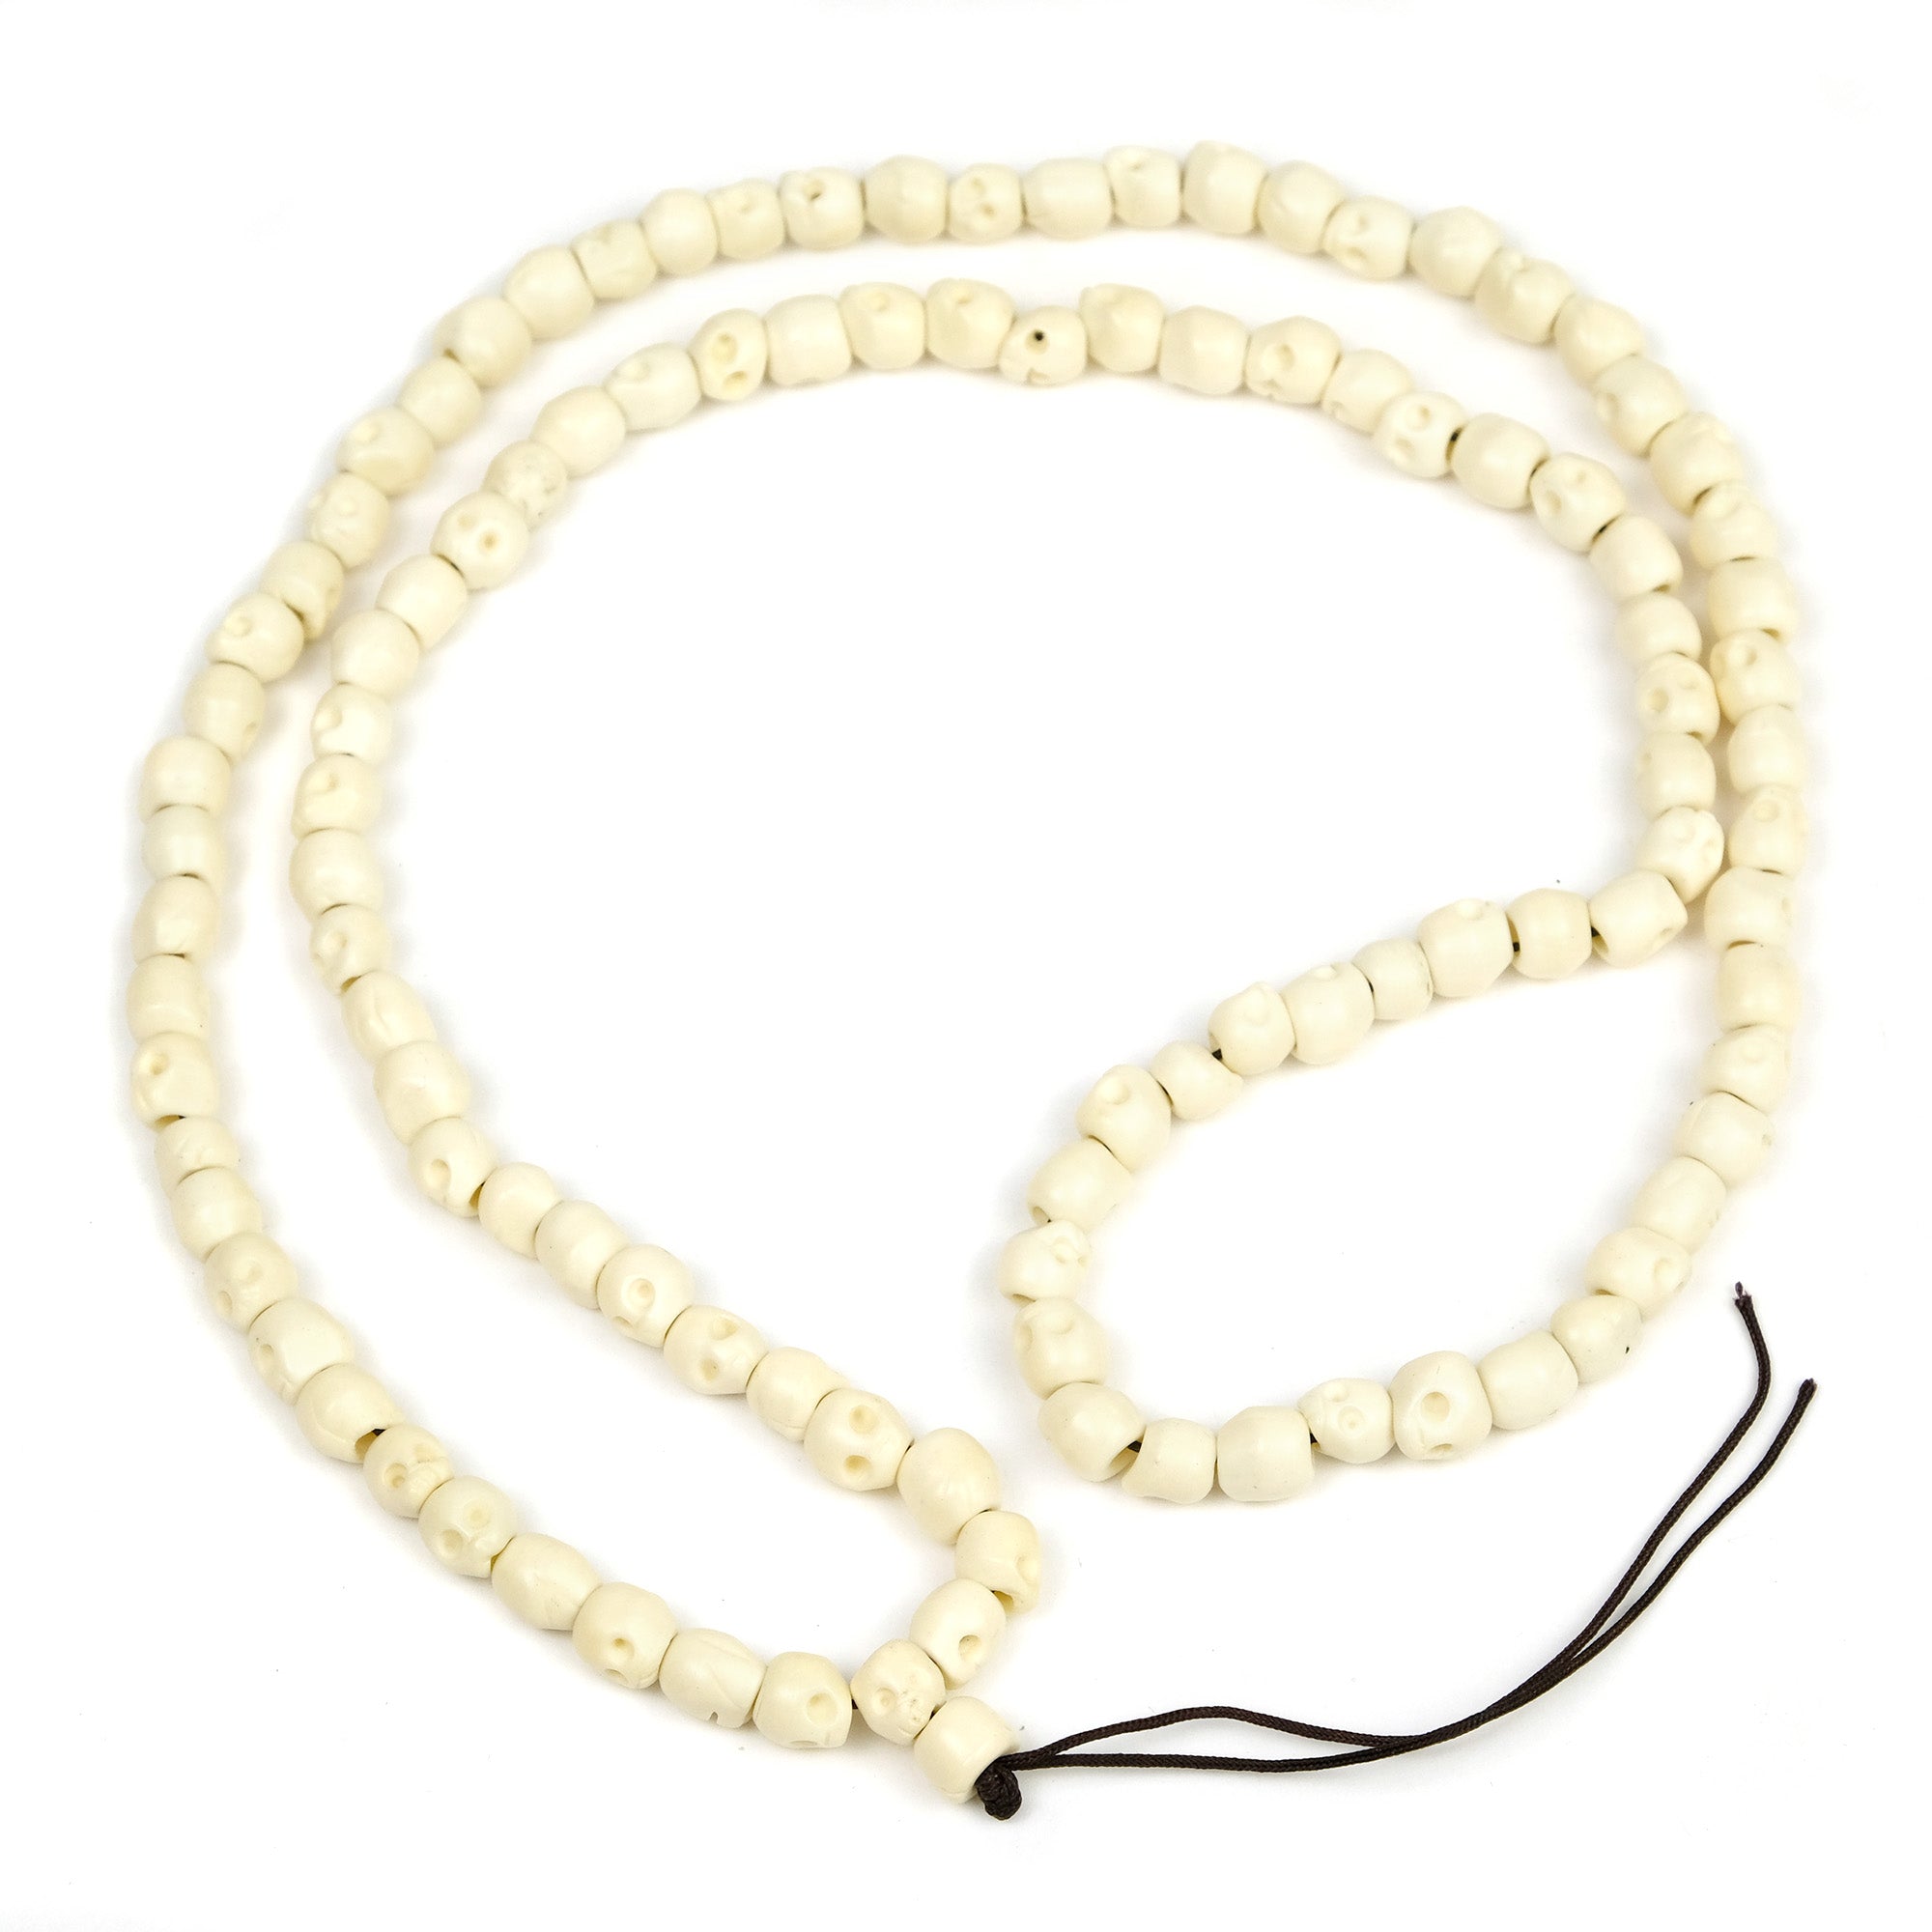 White Skull Beads (7mm) — The Bead Chest